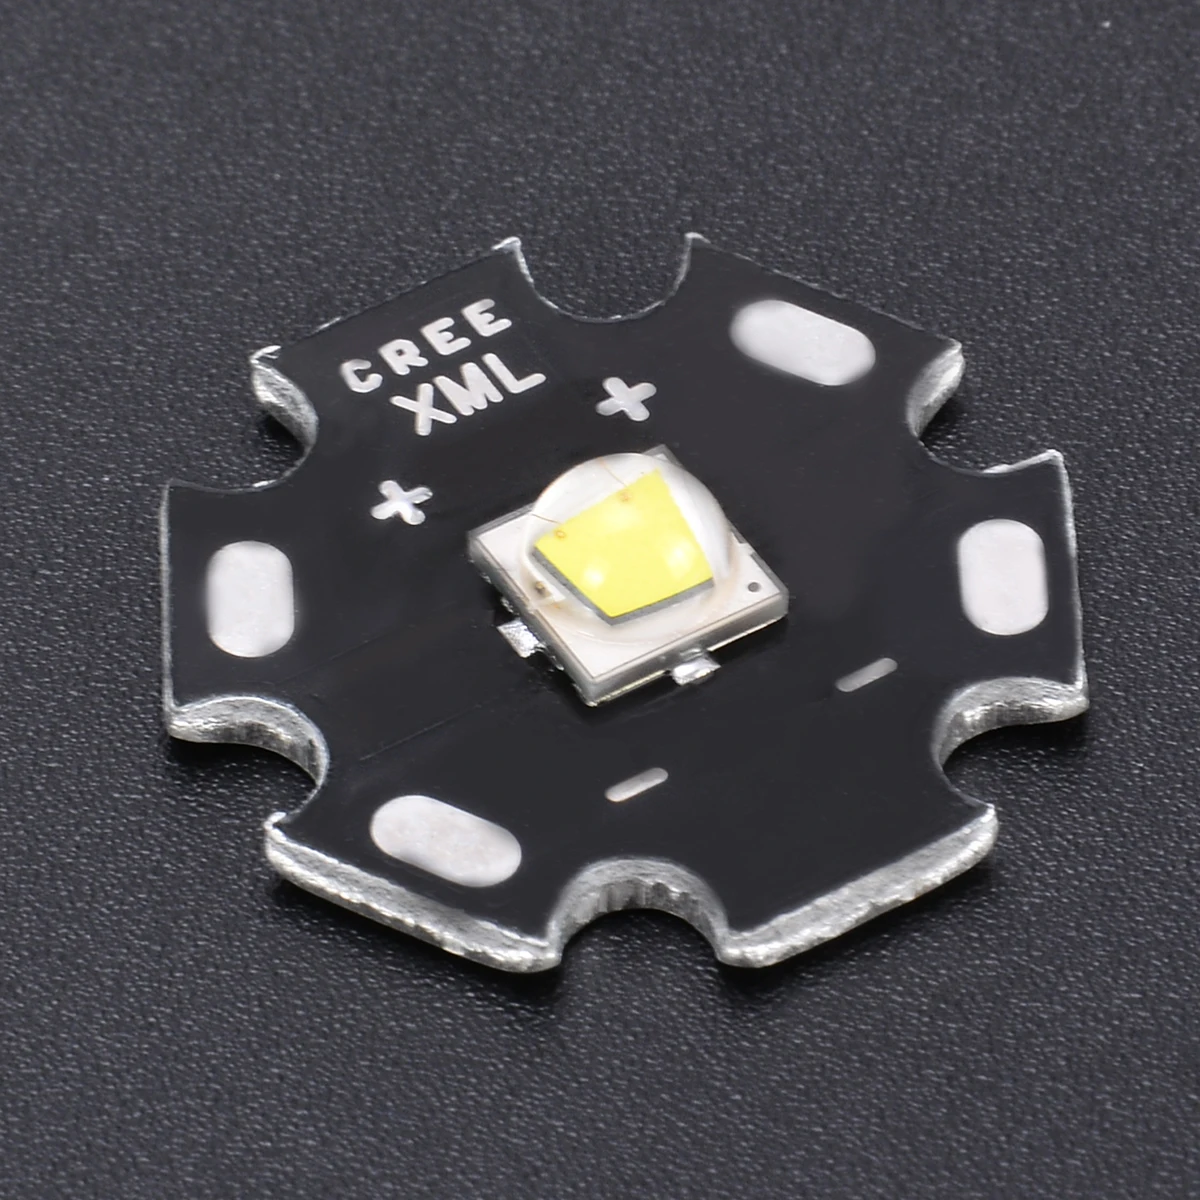 1 шт. прочный Cree XM-L2 светодиодный U3 Bin 10 Вт 3A 1260lm нейтральный белый светильник светодиодный излучатель диодный чип с 20 мм Звезда PCB база для DIY